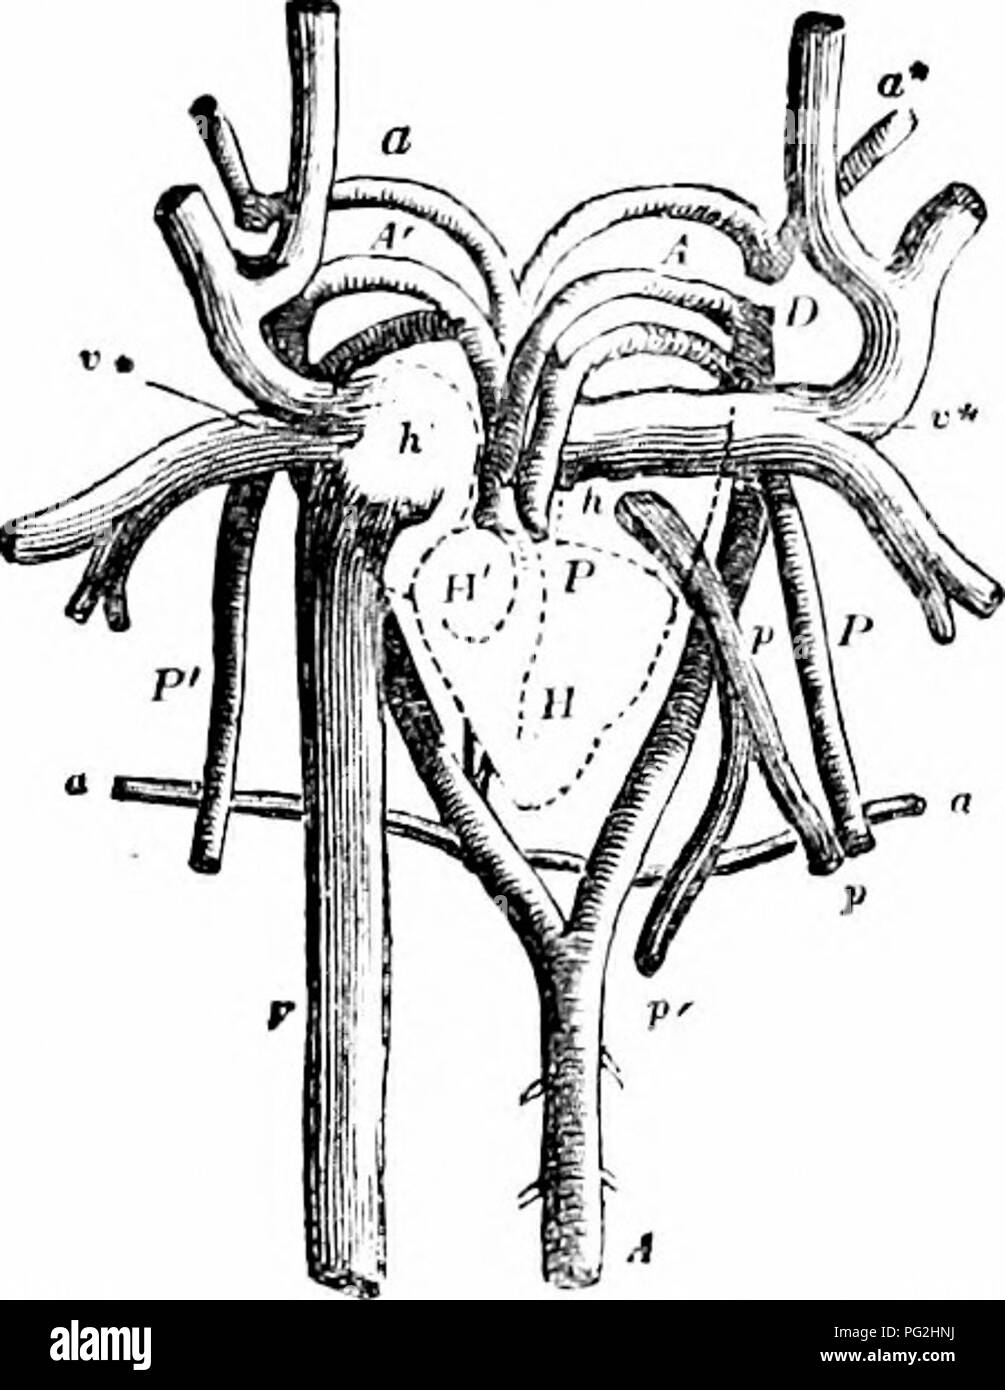 . Sur l'anatomie des vertébrés. L'anatomie comparée des vertébrés ;, ; 1866. 508 ANATOMIE DE VERTÉBRÉS. 334 lorsque distendu, et sans un sinus. Les veines pulmonaires forment un tronc commun, environ la moitié de la taille de l'postcaval, qui avance, en contact avec et à la gauche de l'après- caval, d'ouvrir dans l'arrière-fin de l'oreillette gauche, sans aucune structure valvulaire. L'orifice auriculo-ventriculaire, formé comme celui de l'oreillette droite, est proche de la fin de la veine pulmonaire : il est gardé par un court-circuit, à l'arrière de la base du ventricule, chordse tendinete à qui sont à Banque D'Images